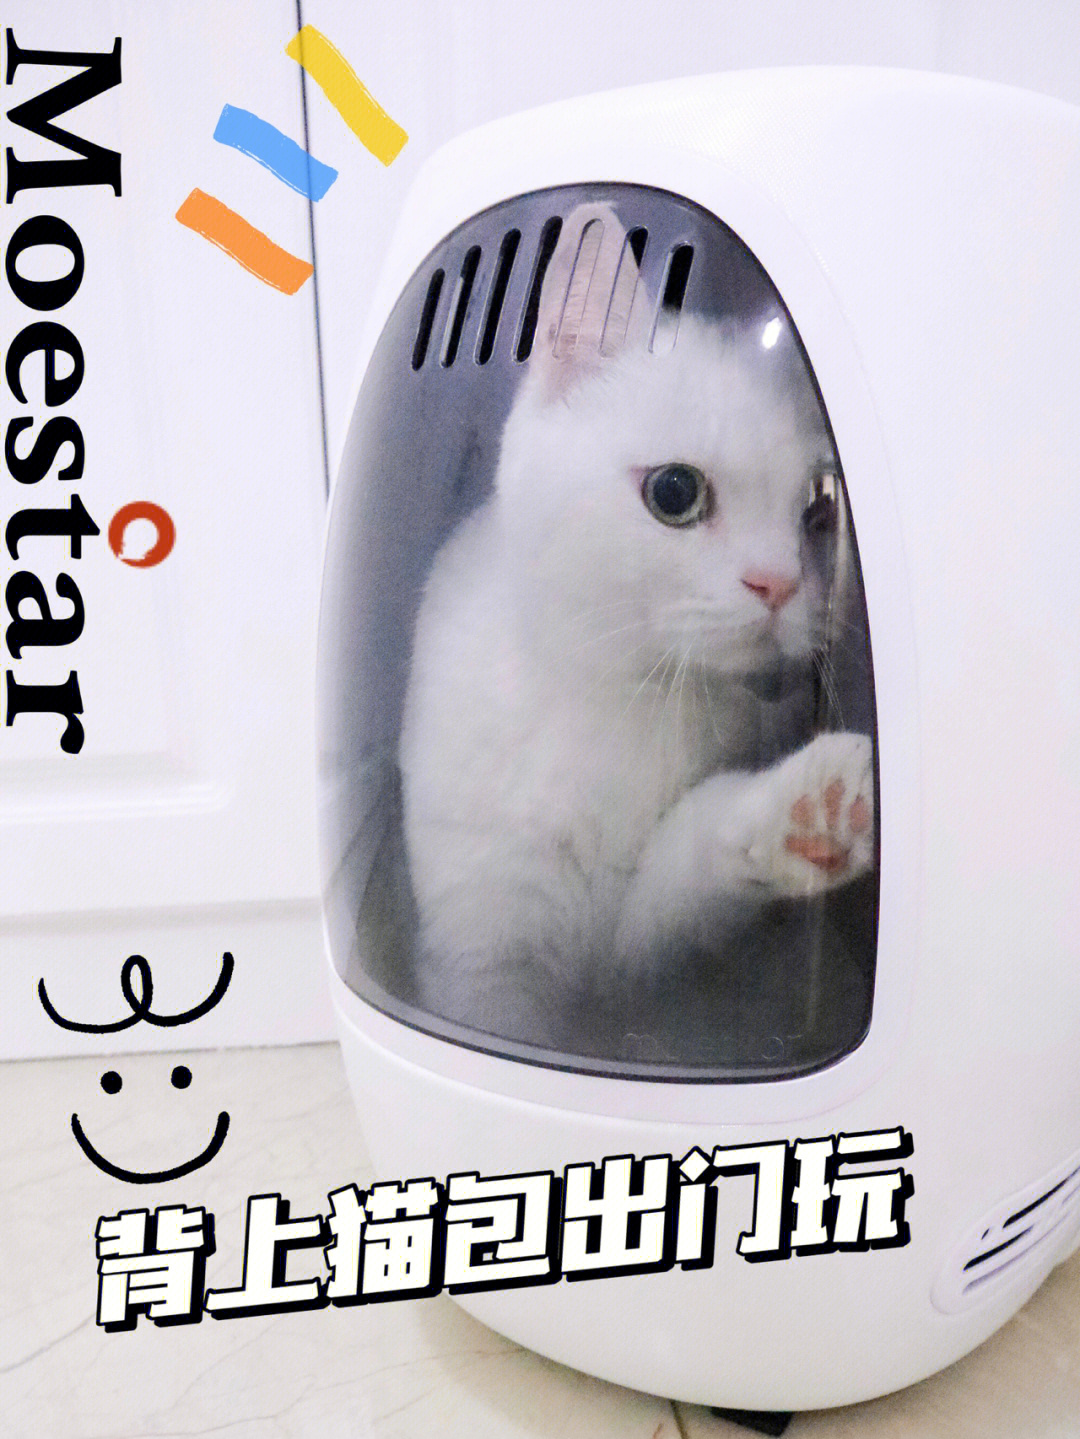 太空舱背包害死猫图片